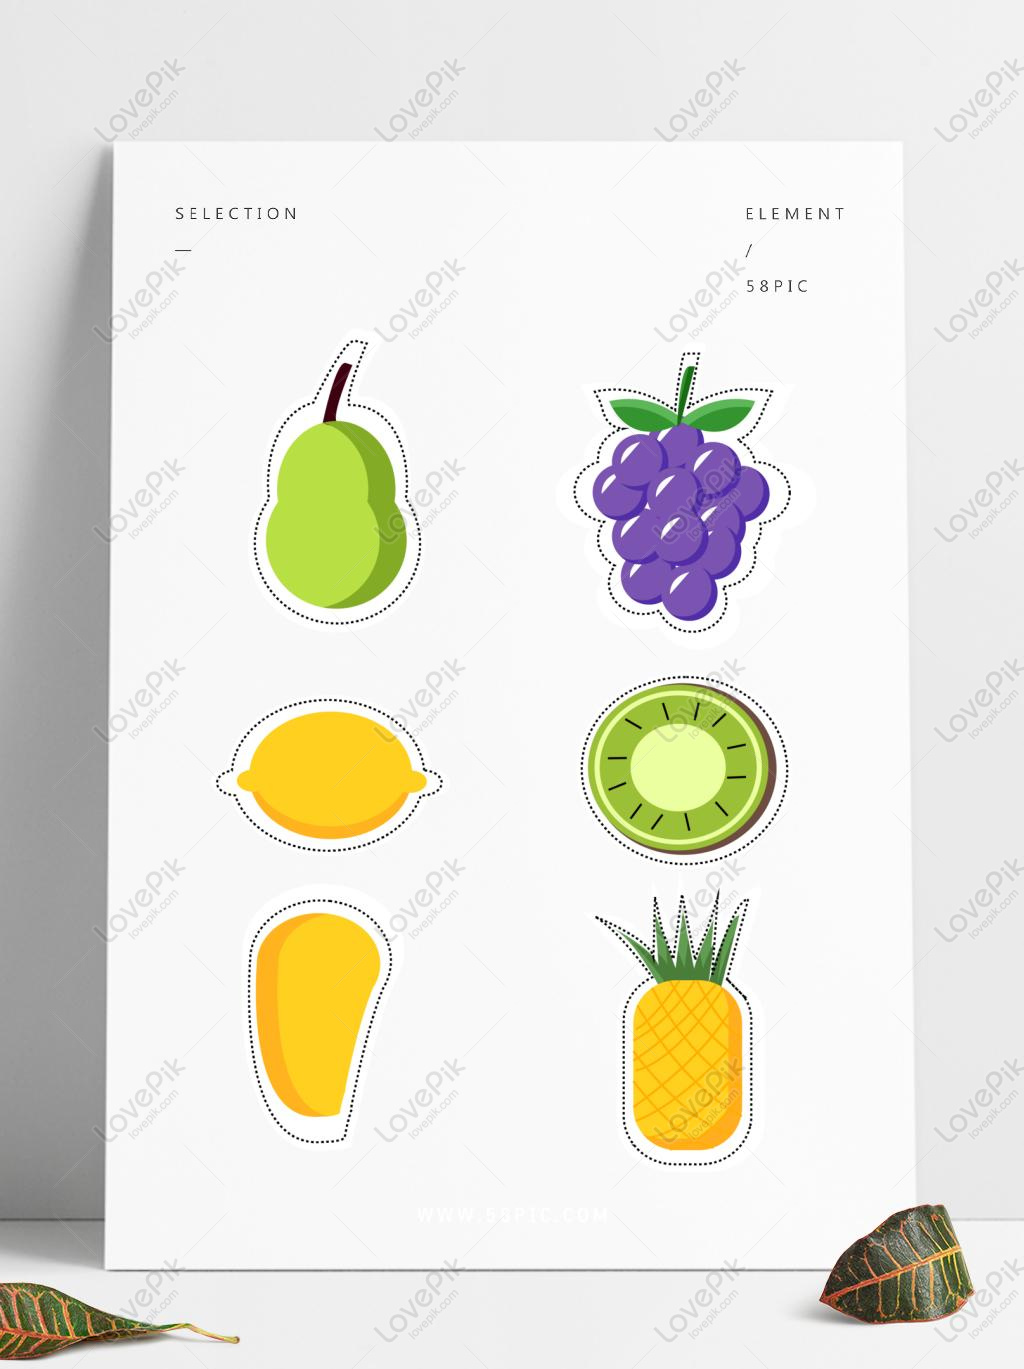 Vector trái cây dễ thương: Bạn muốn thử sức với việc thiết kế những hình ảnh trái cây đẹp mắt và dễ thương? Hãy đến với hình ảnh vector trái cây siêu xinh sẽ giúp bạn có thêm nhiều ý tưởng và kiến thức để tạo ra những tác phẩm thiết kế độc đáo và đẳng cấp.